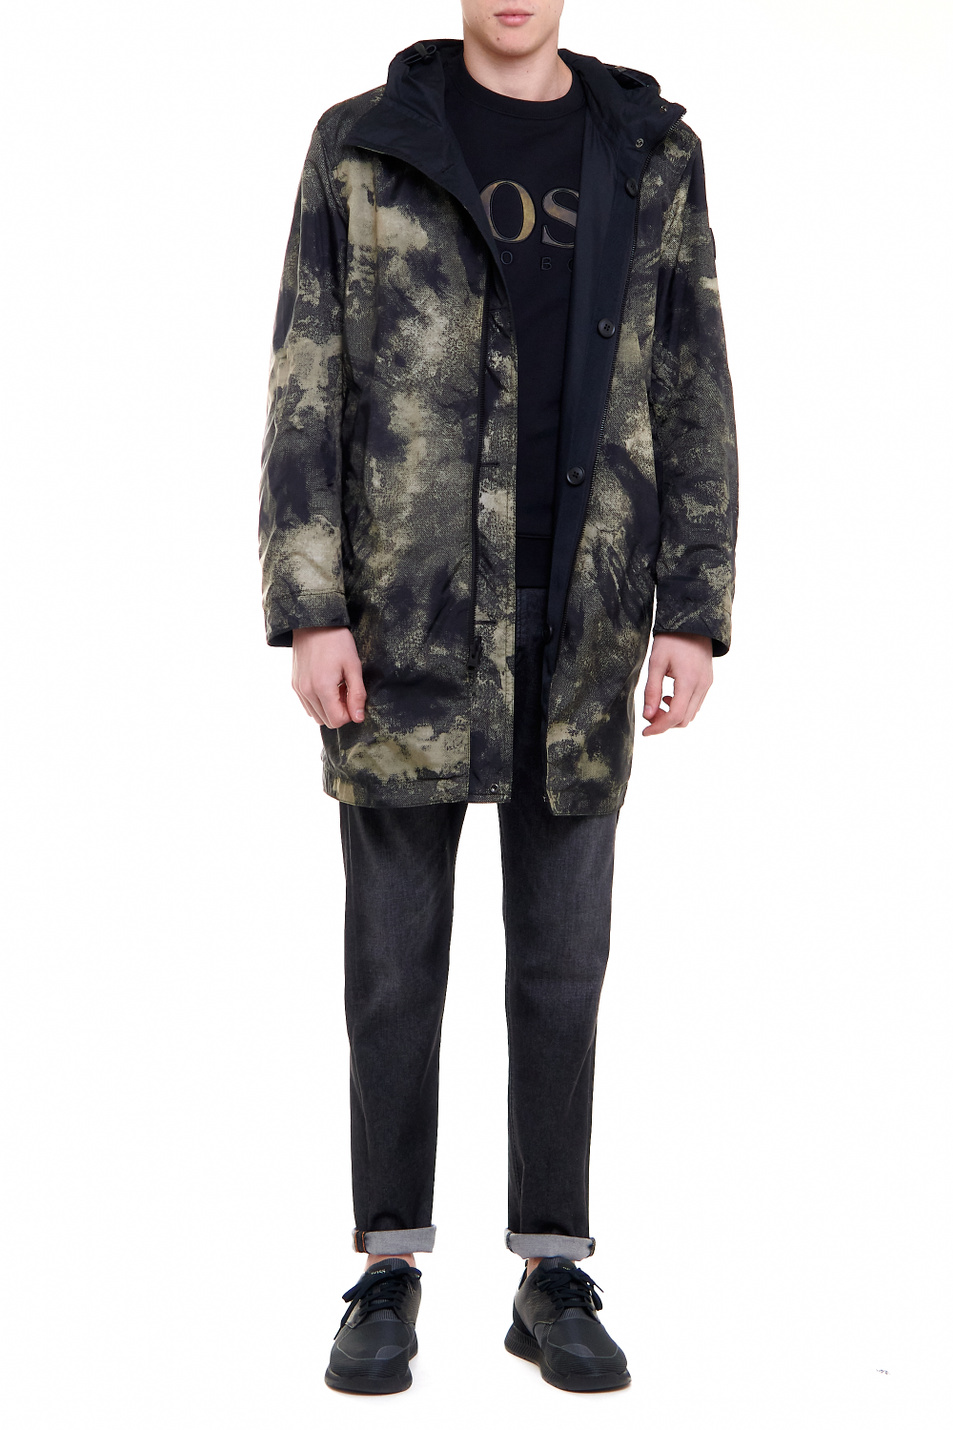 BOSS Двусторонняя куртка Odrake с капюшоном и камуфляжным принтом (цвет ), артикул 50447100 | Фото 2